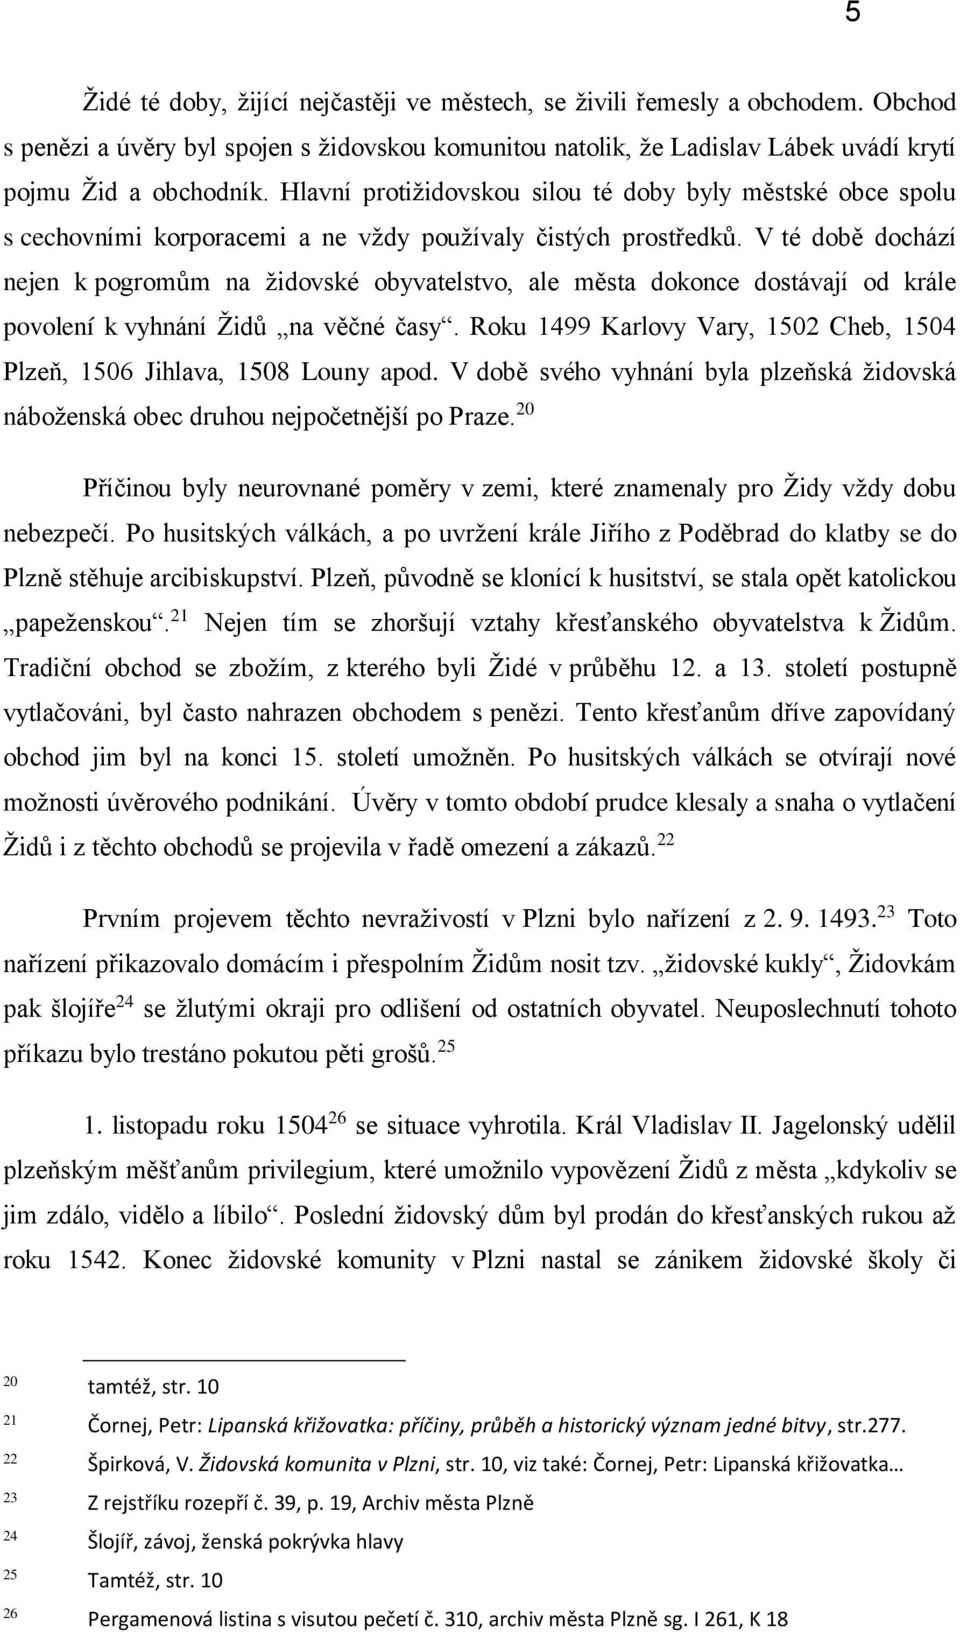 Šoa plzeňských Židů a jejich návrat - PDF Stažení zdarma